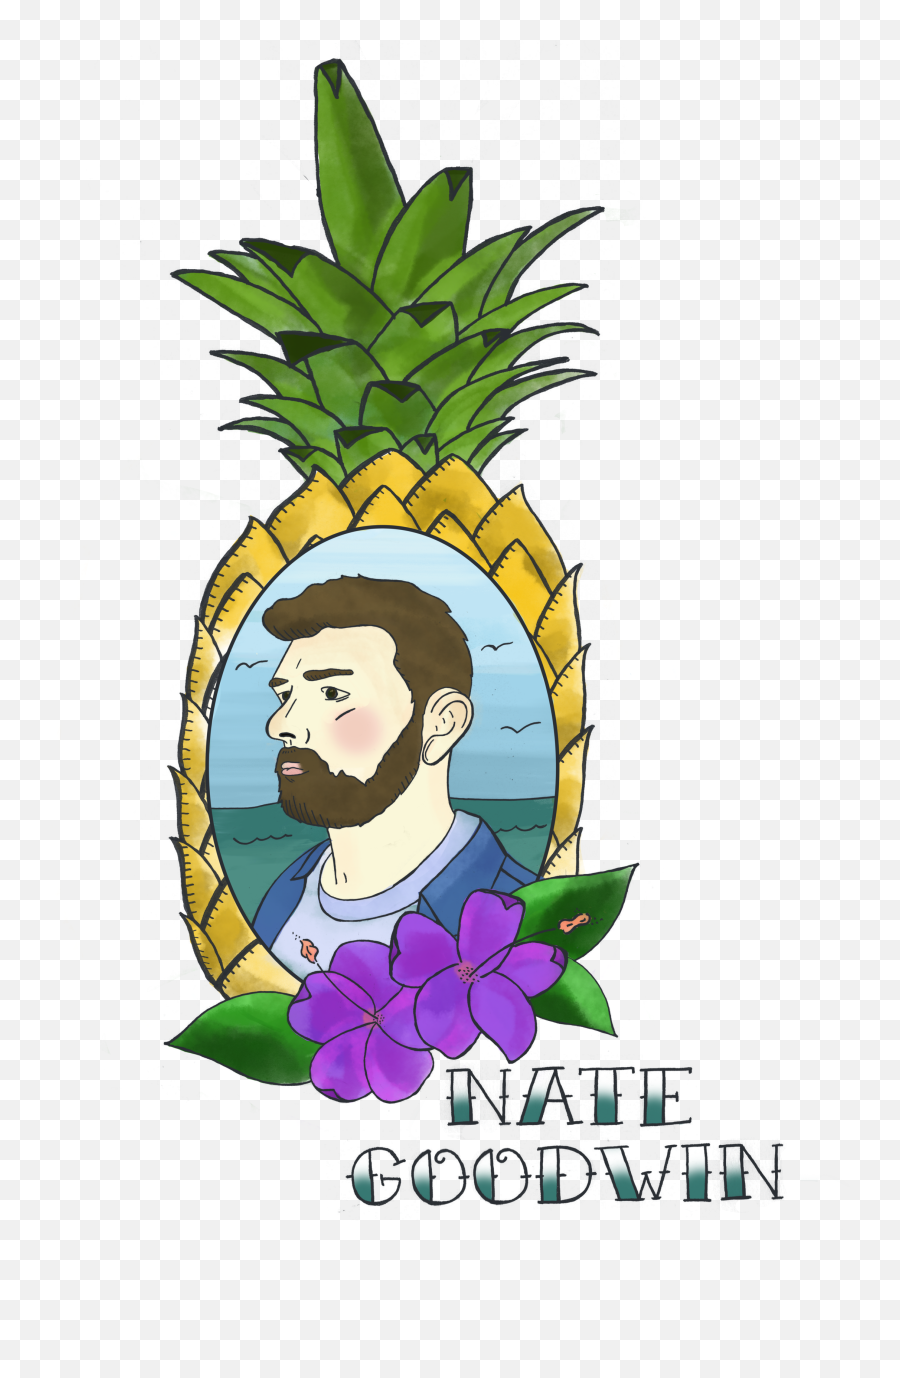 Chubbies Nate Goodwin Emoji,Sexy Emojis Fruits